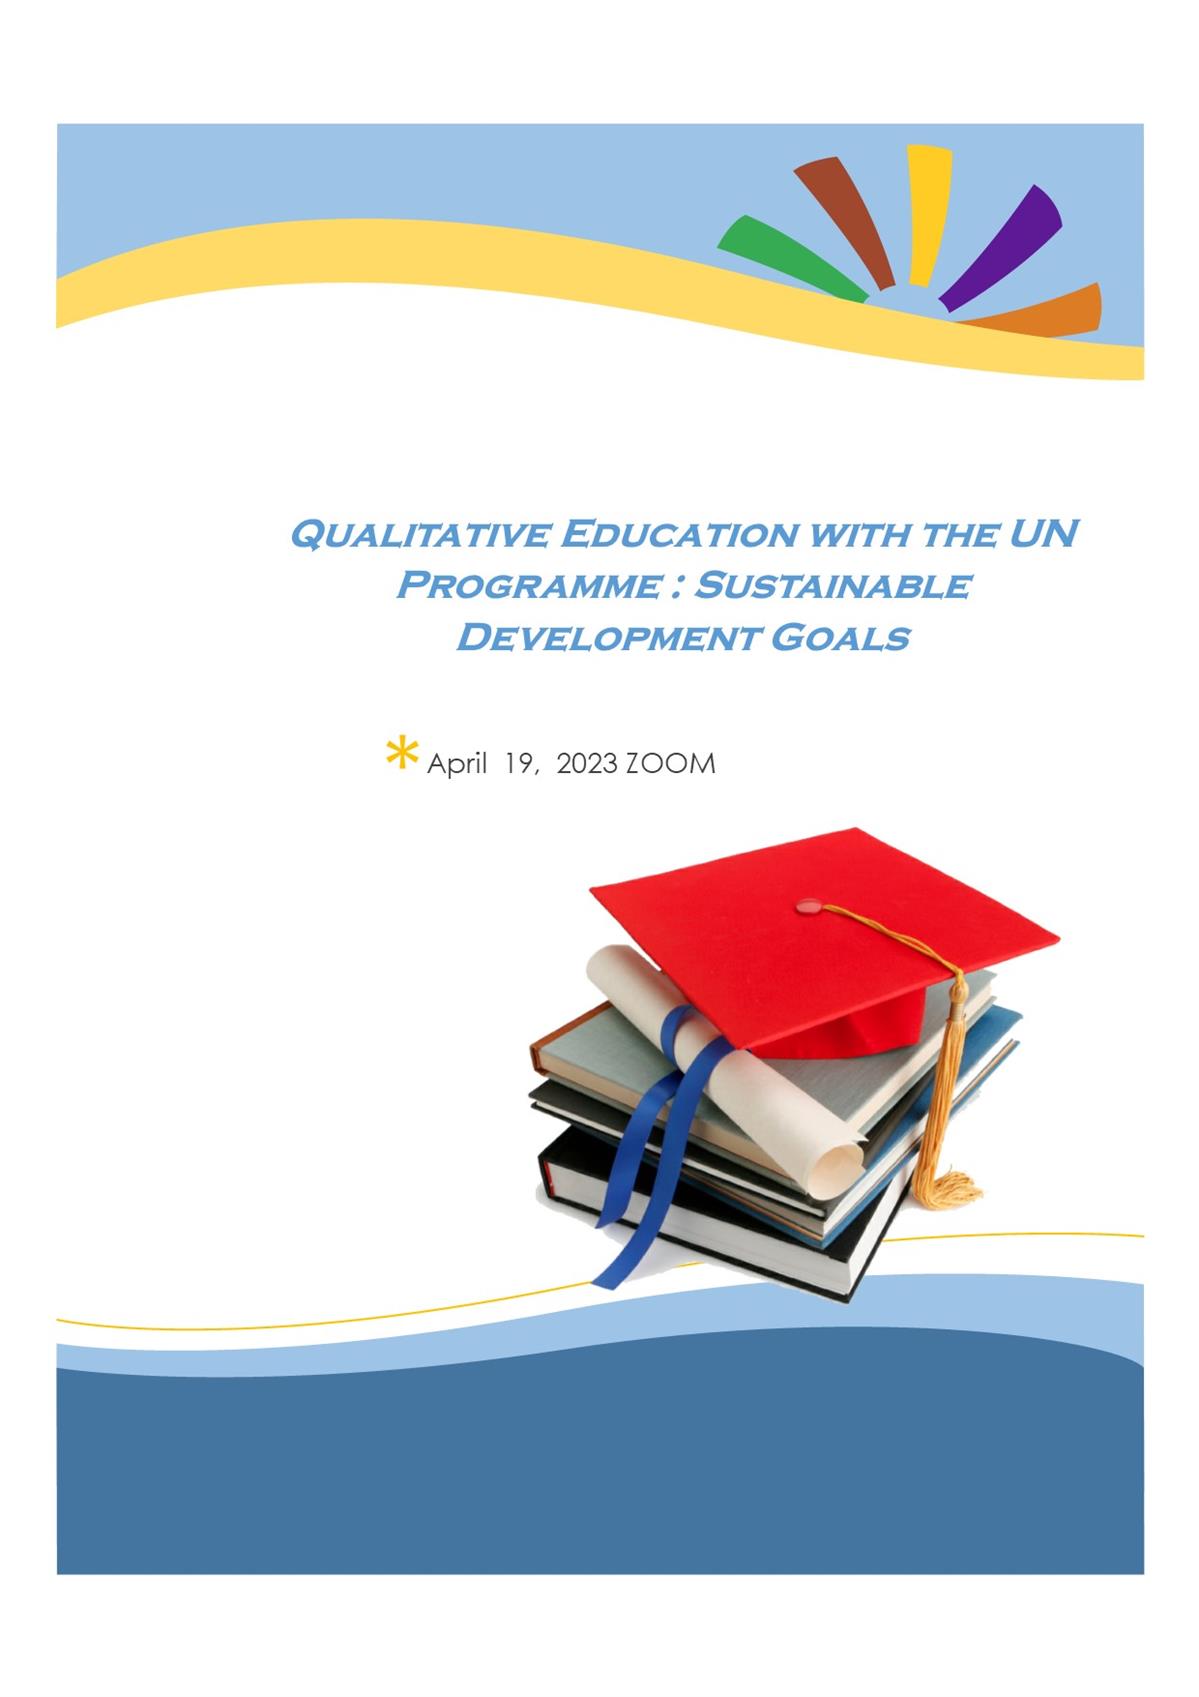 Качественное образование в рамках Программы ООН: Цели устойчивого развития. 